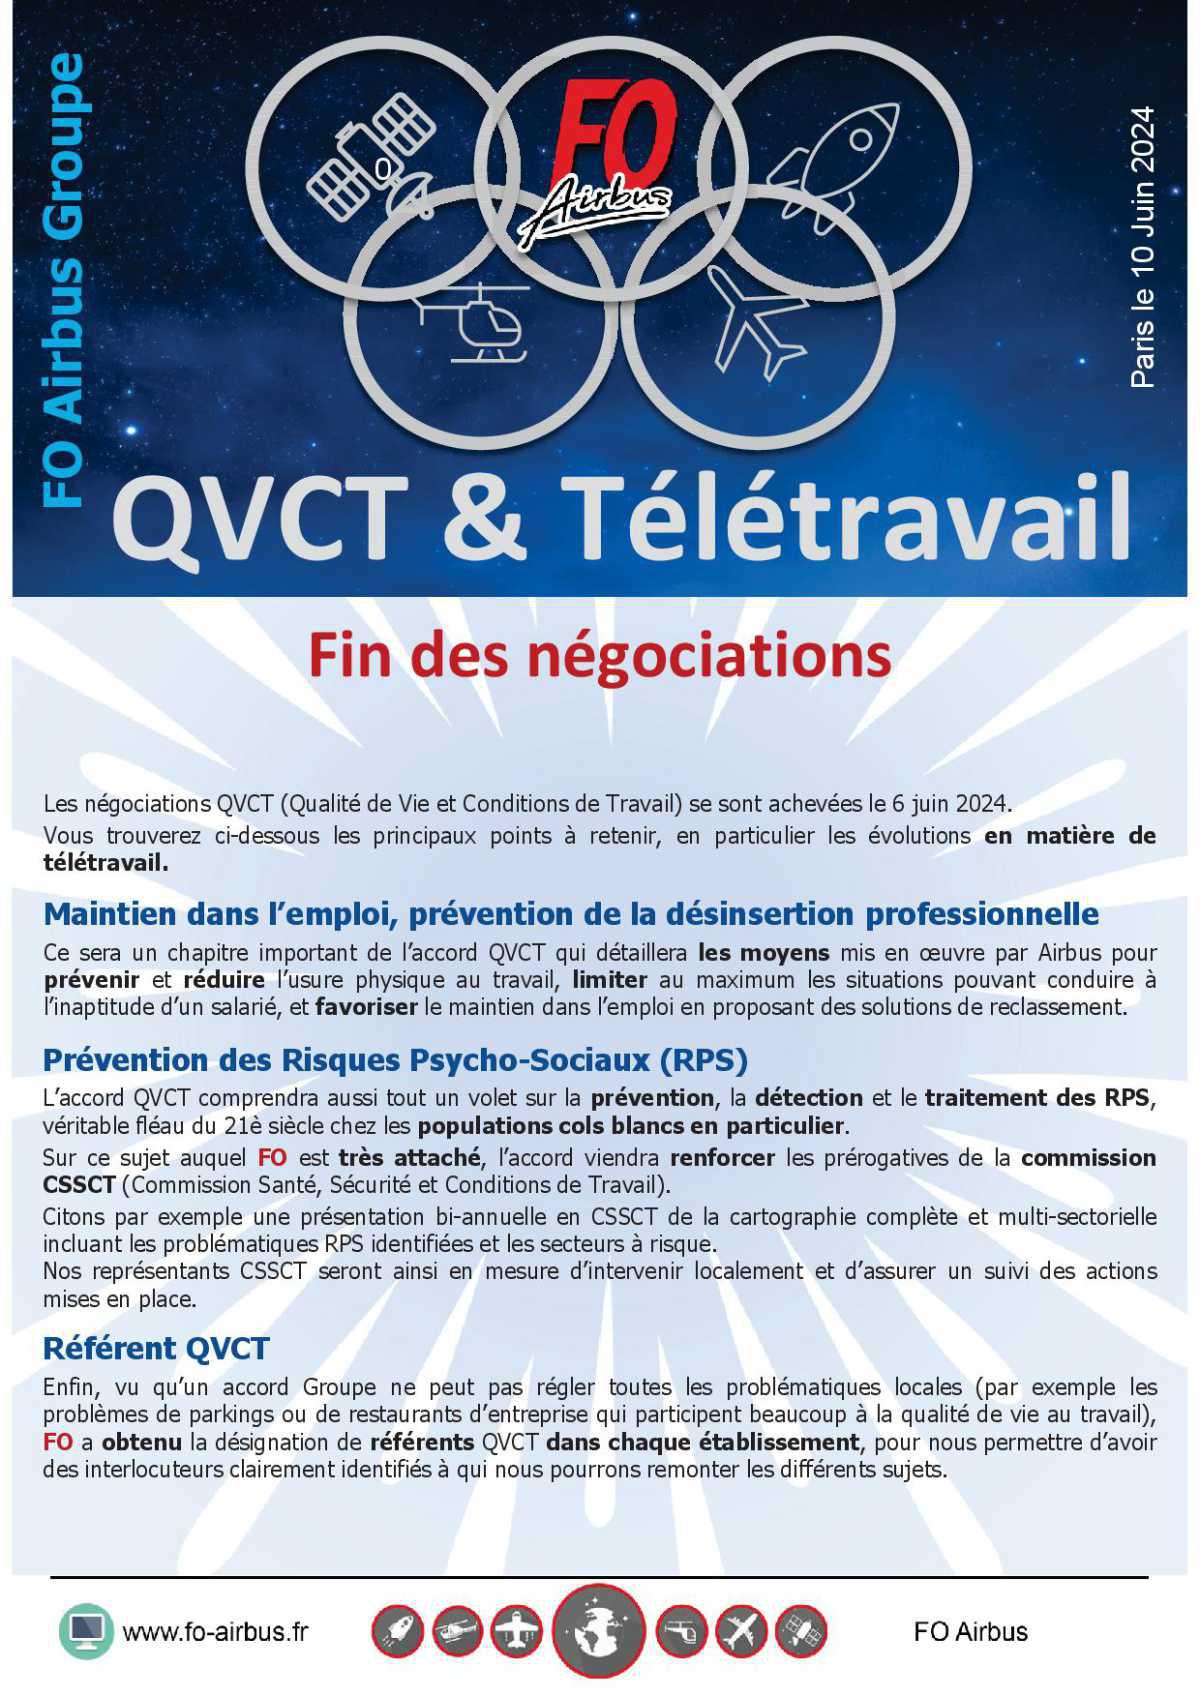 QVTC et télétravail